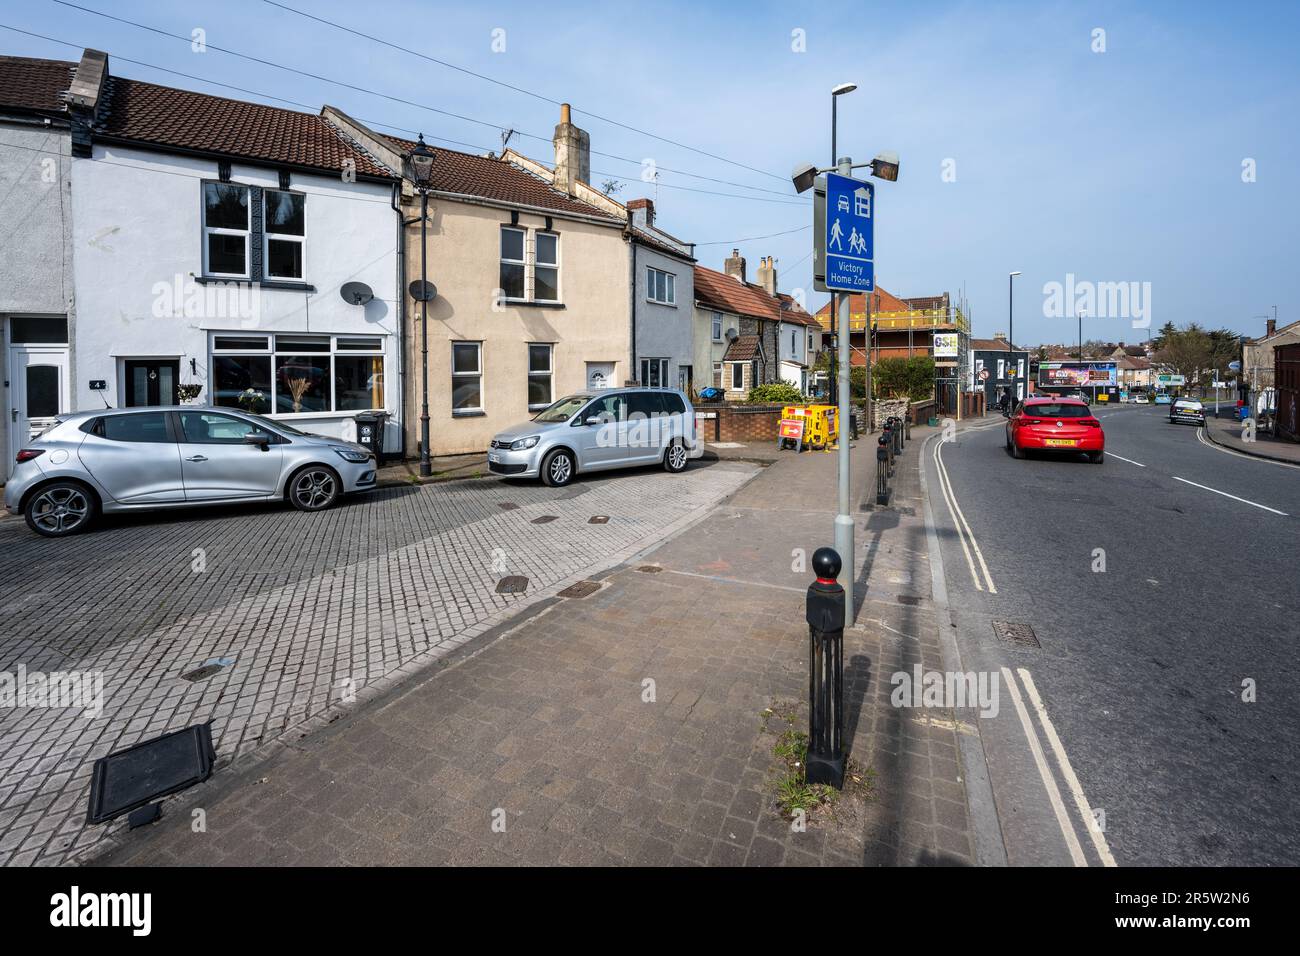 Le indicazioni su Bedminster Down Road segnano l'entrata di un quartiere 'home zone' calmato dal traffico di case terrazzate a Bristol. Foto Stock